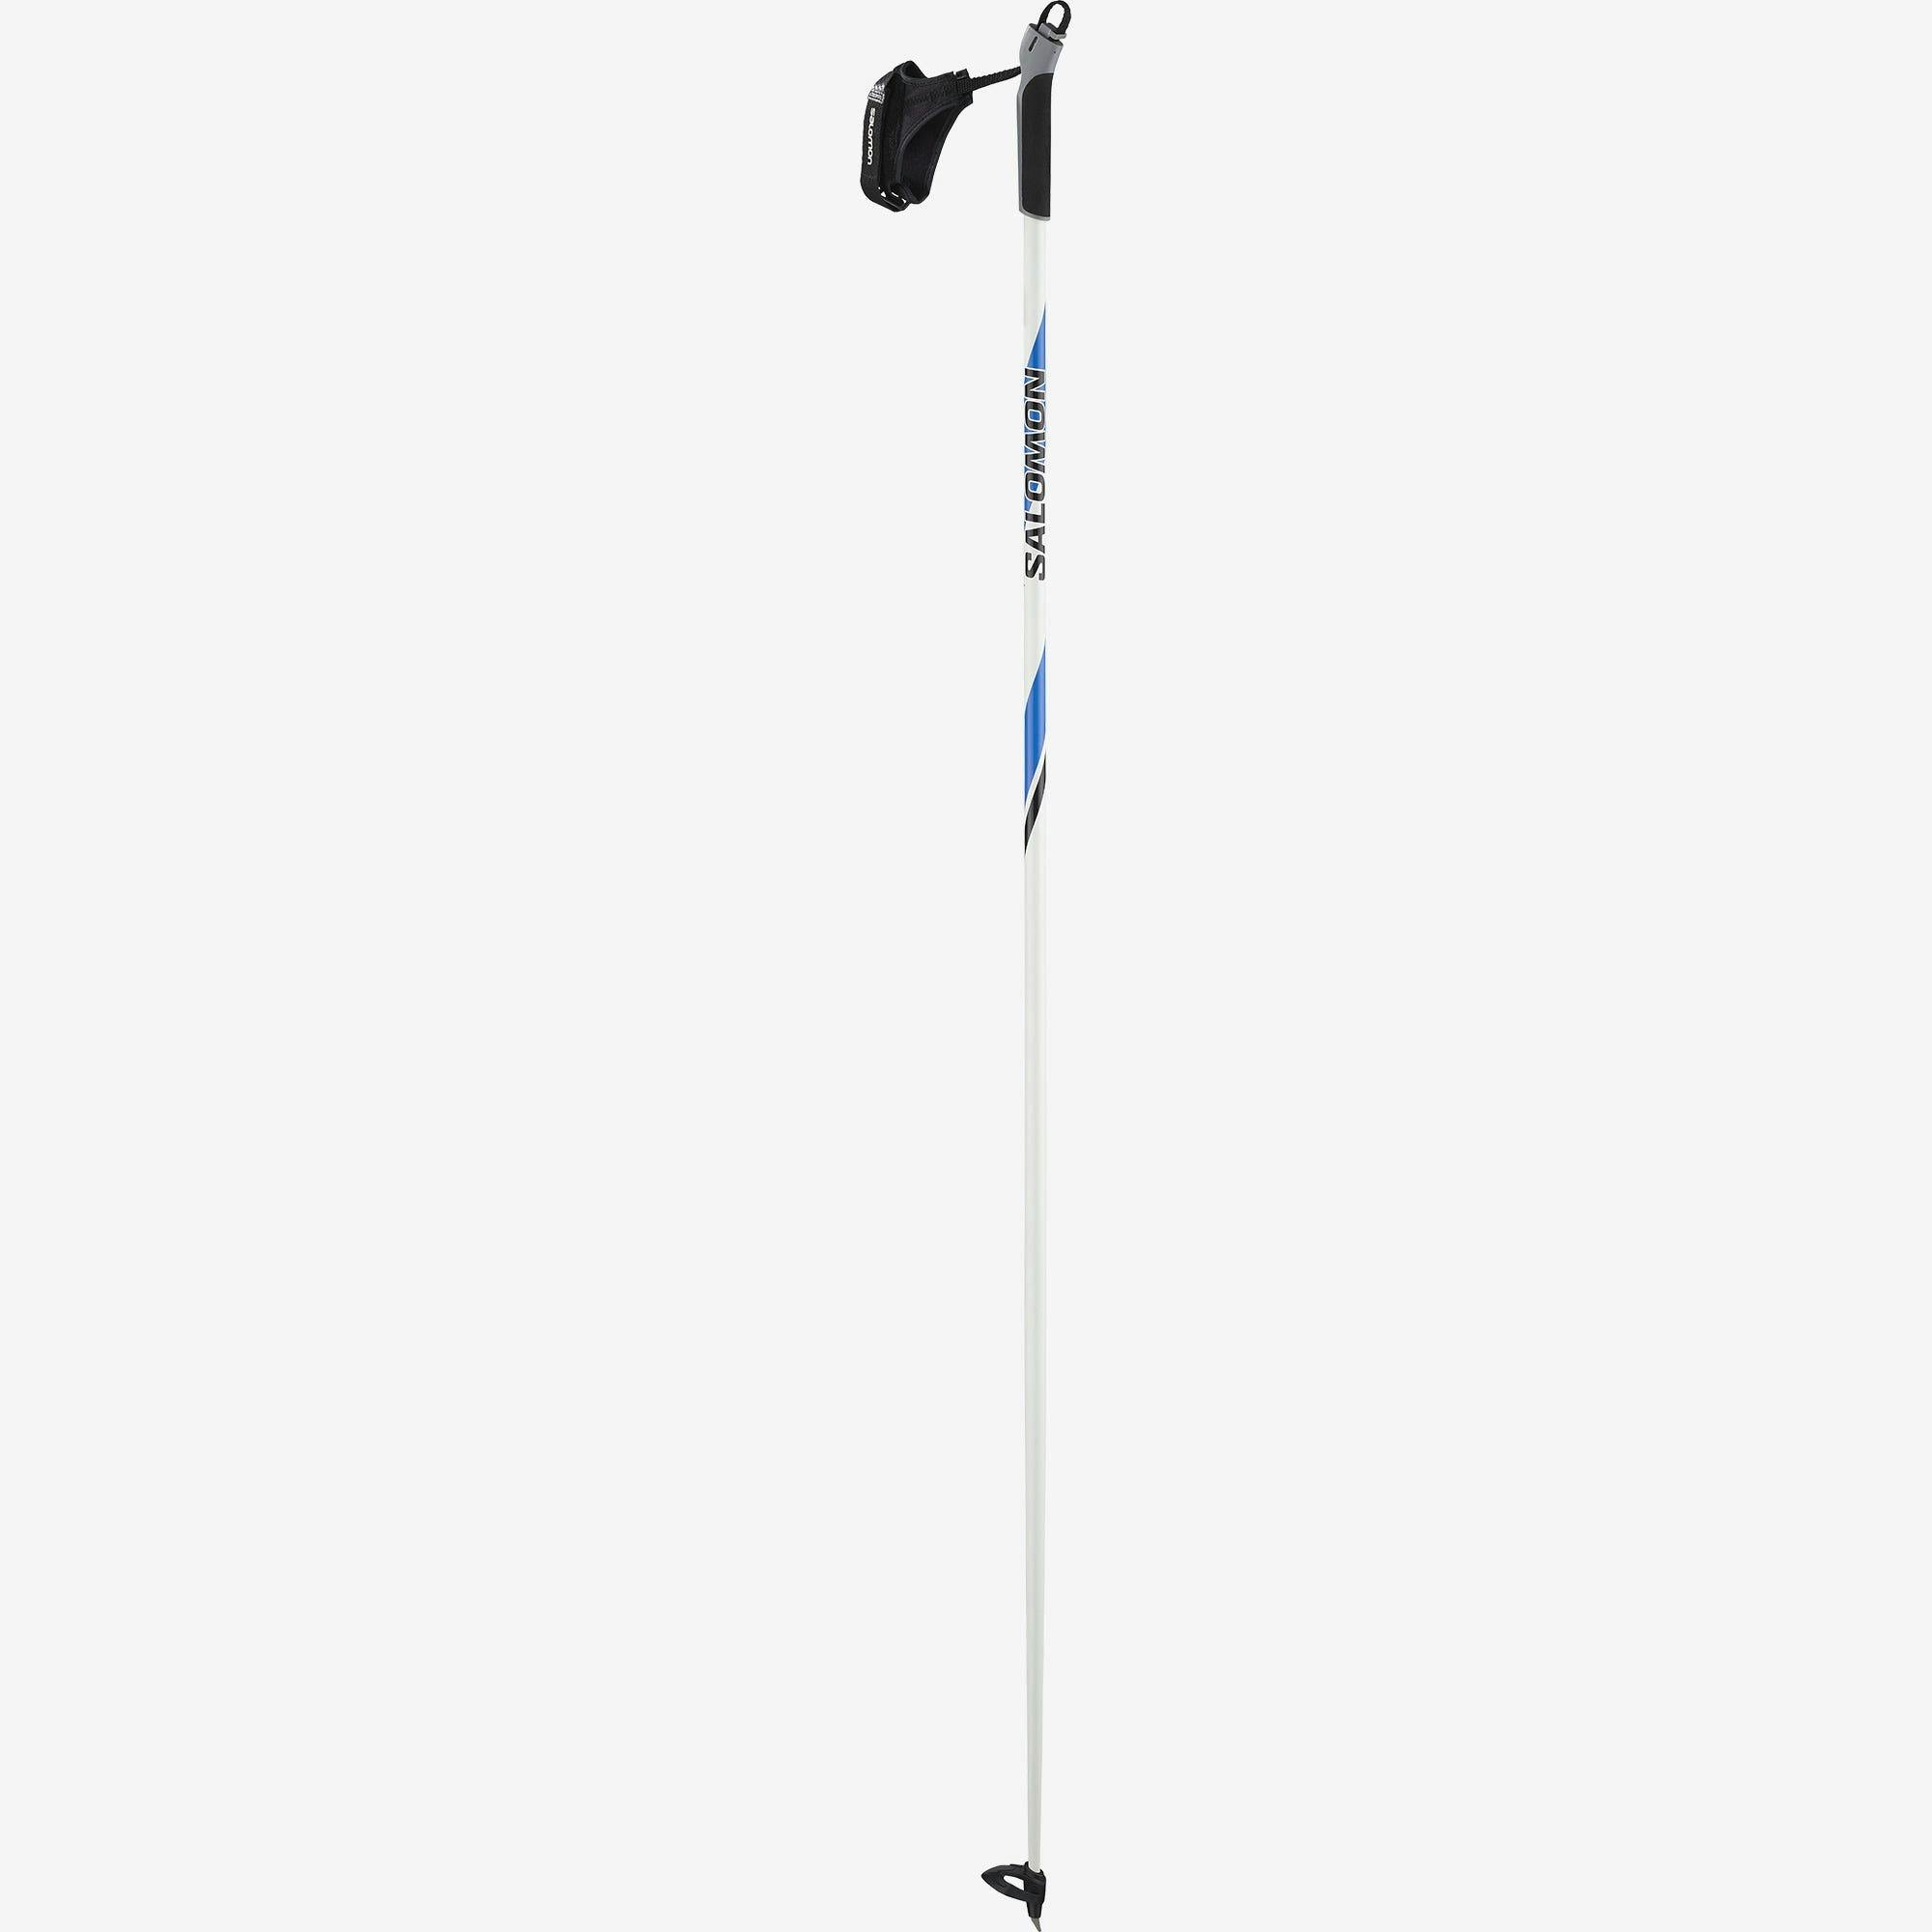 Salomon R 20 Ski Poles · 2020